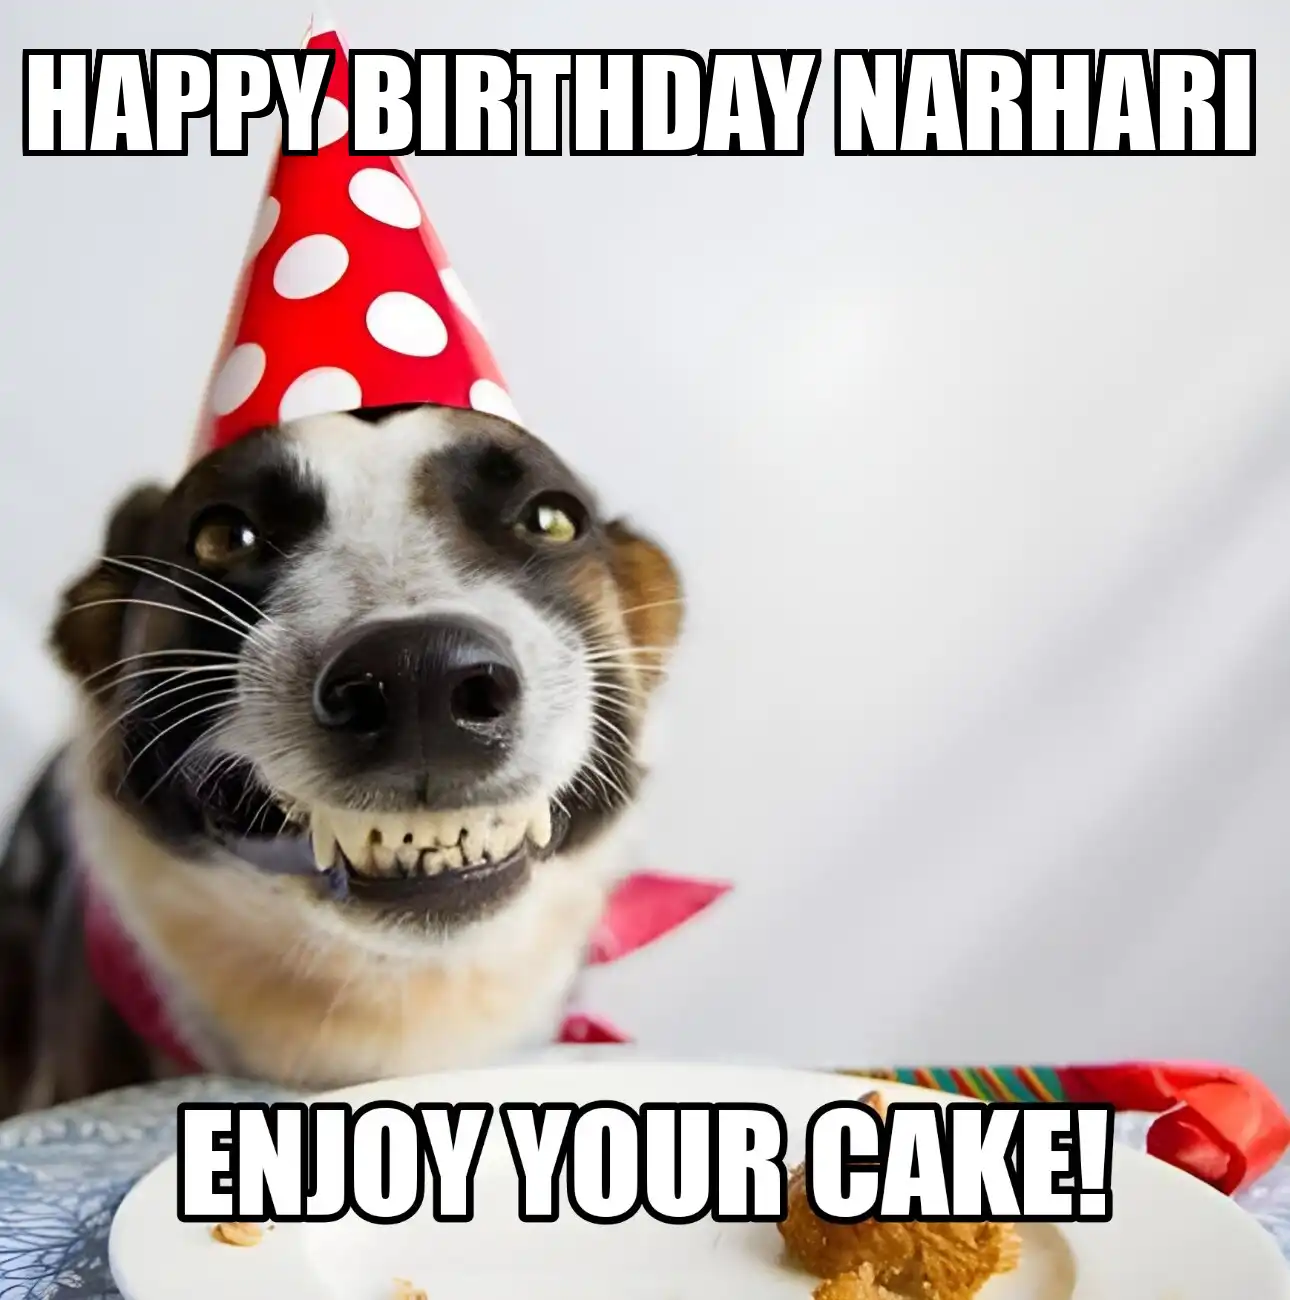 Happy Birthday Narhari Enjoy Your Cake Dog Meme